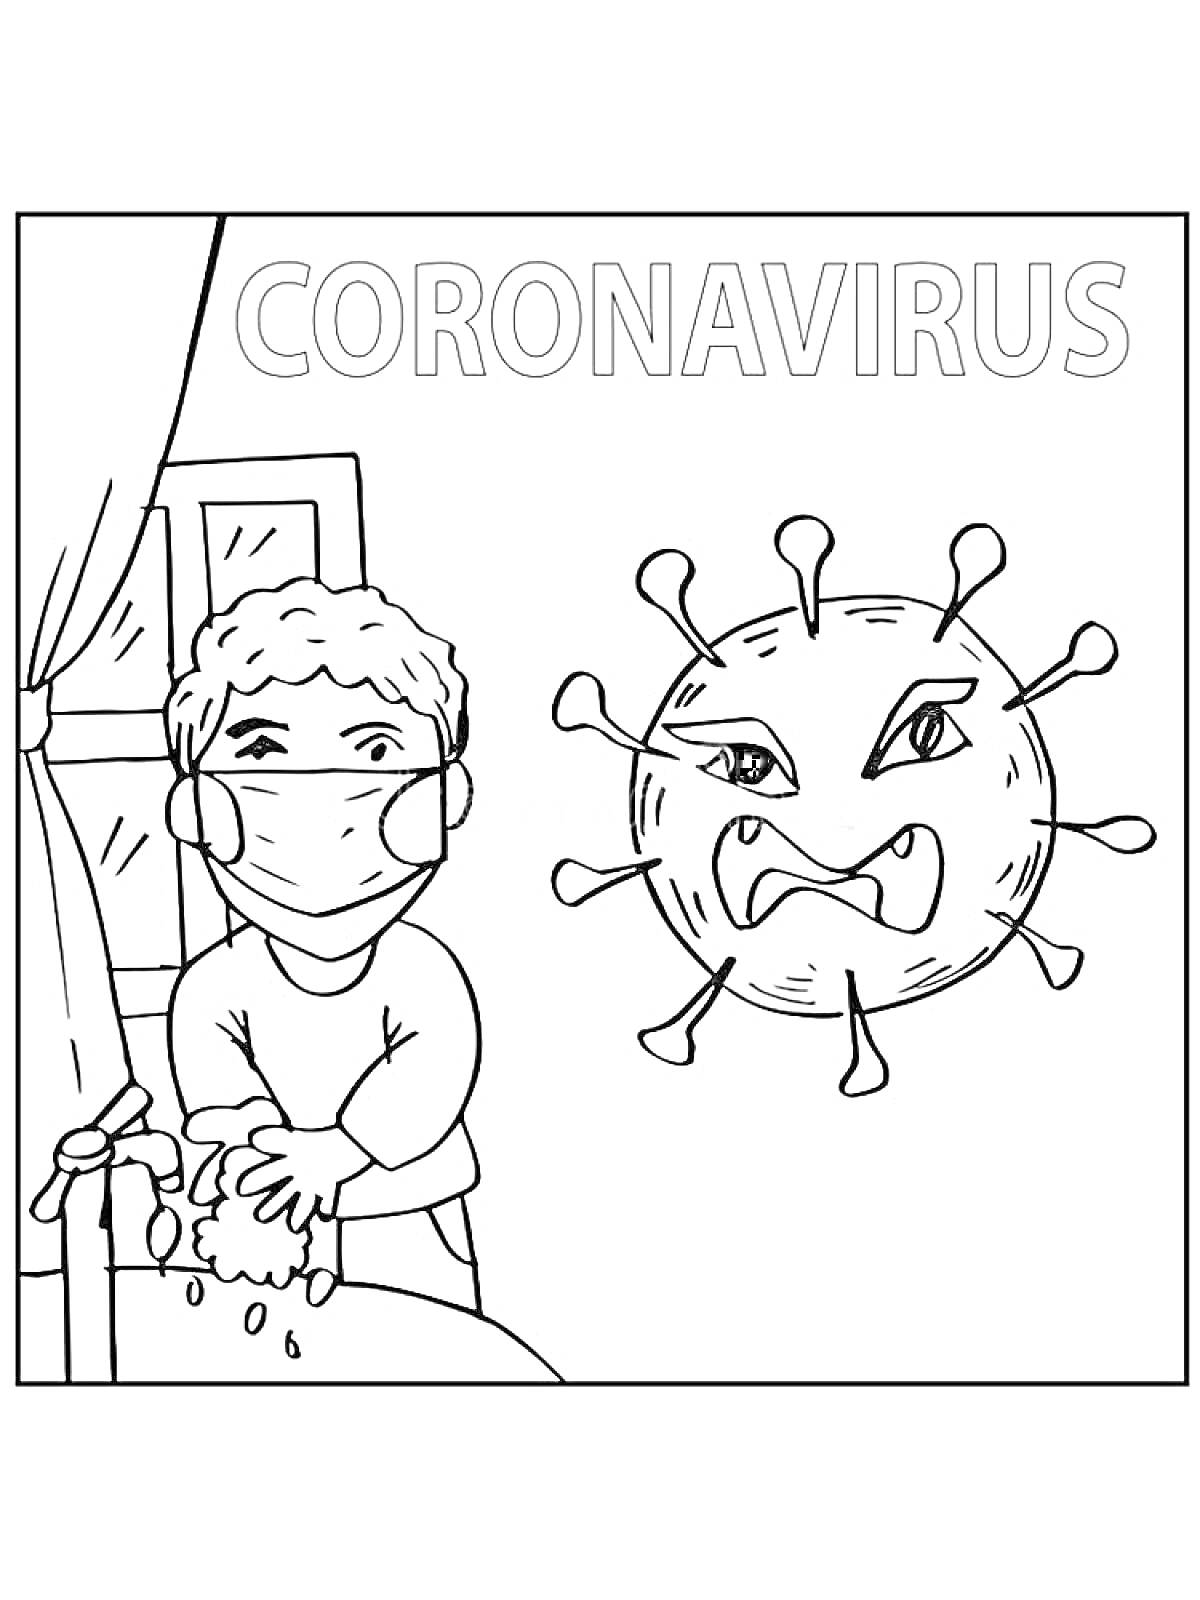 Человек моет руки с мылом, нося маску, рядом злой коронавирус, окно, надпись 